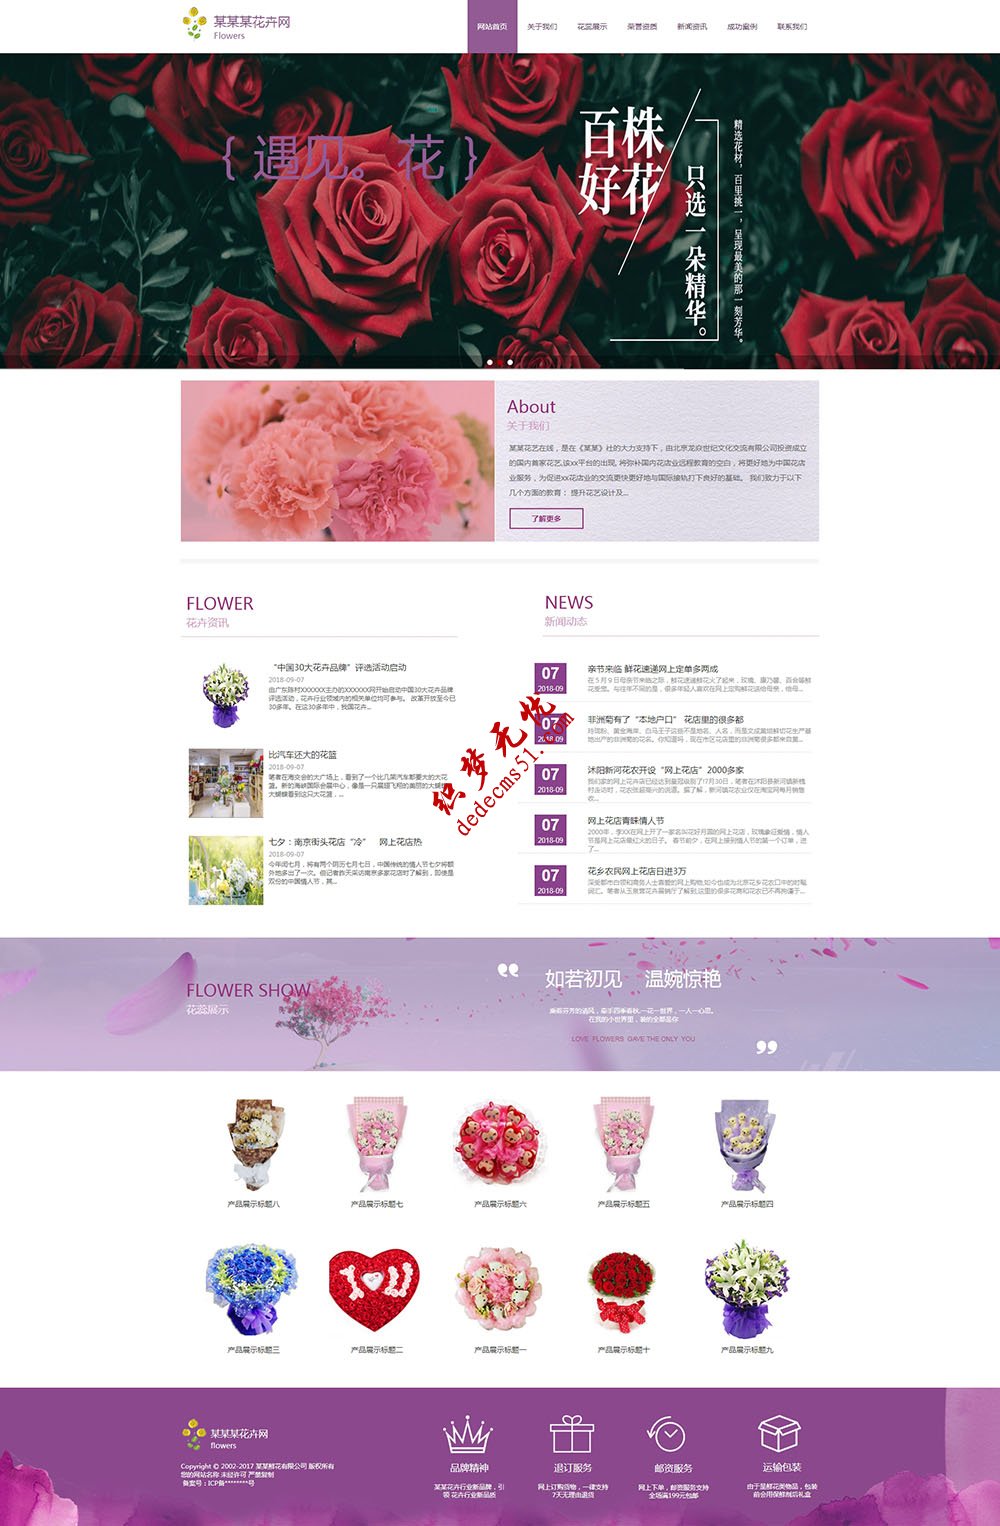 紫色节日dede模板下载礼品鲜花类织梦模板下载(自适应手机)